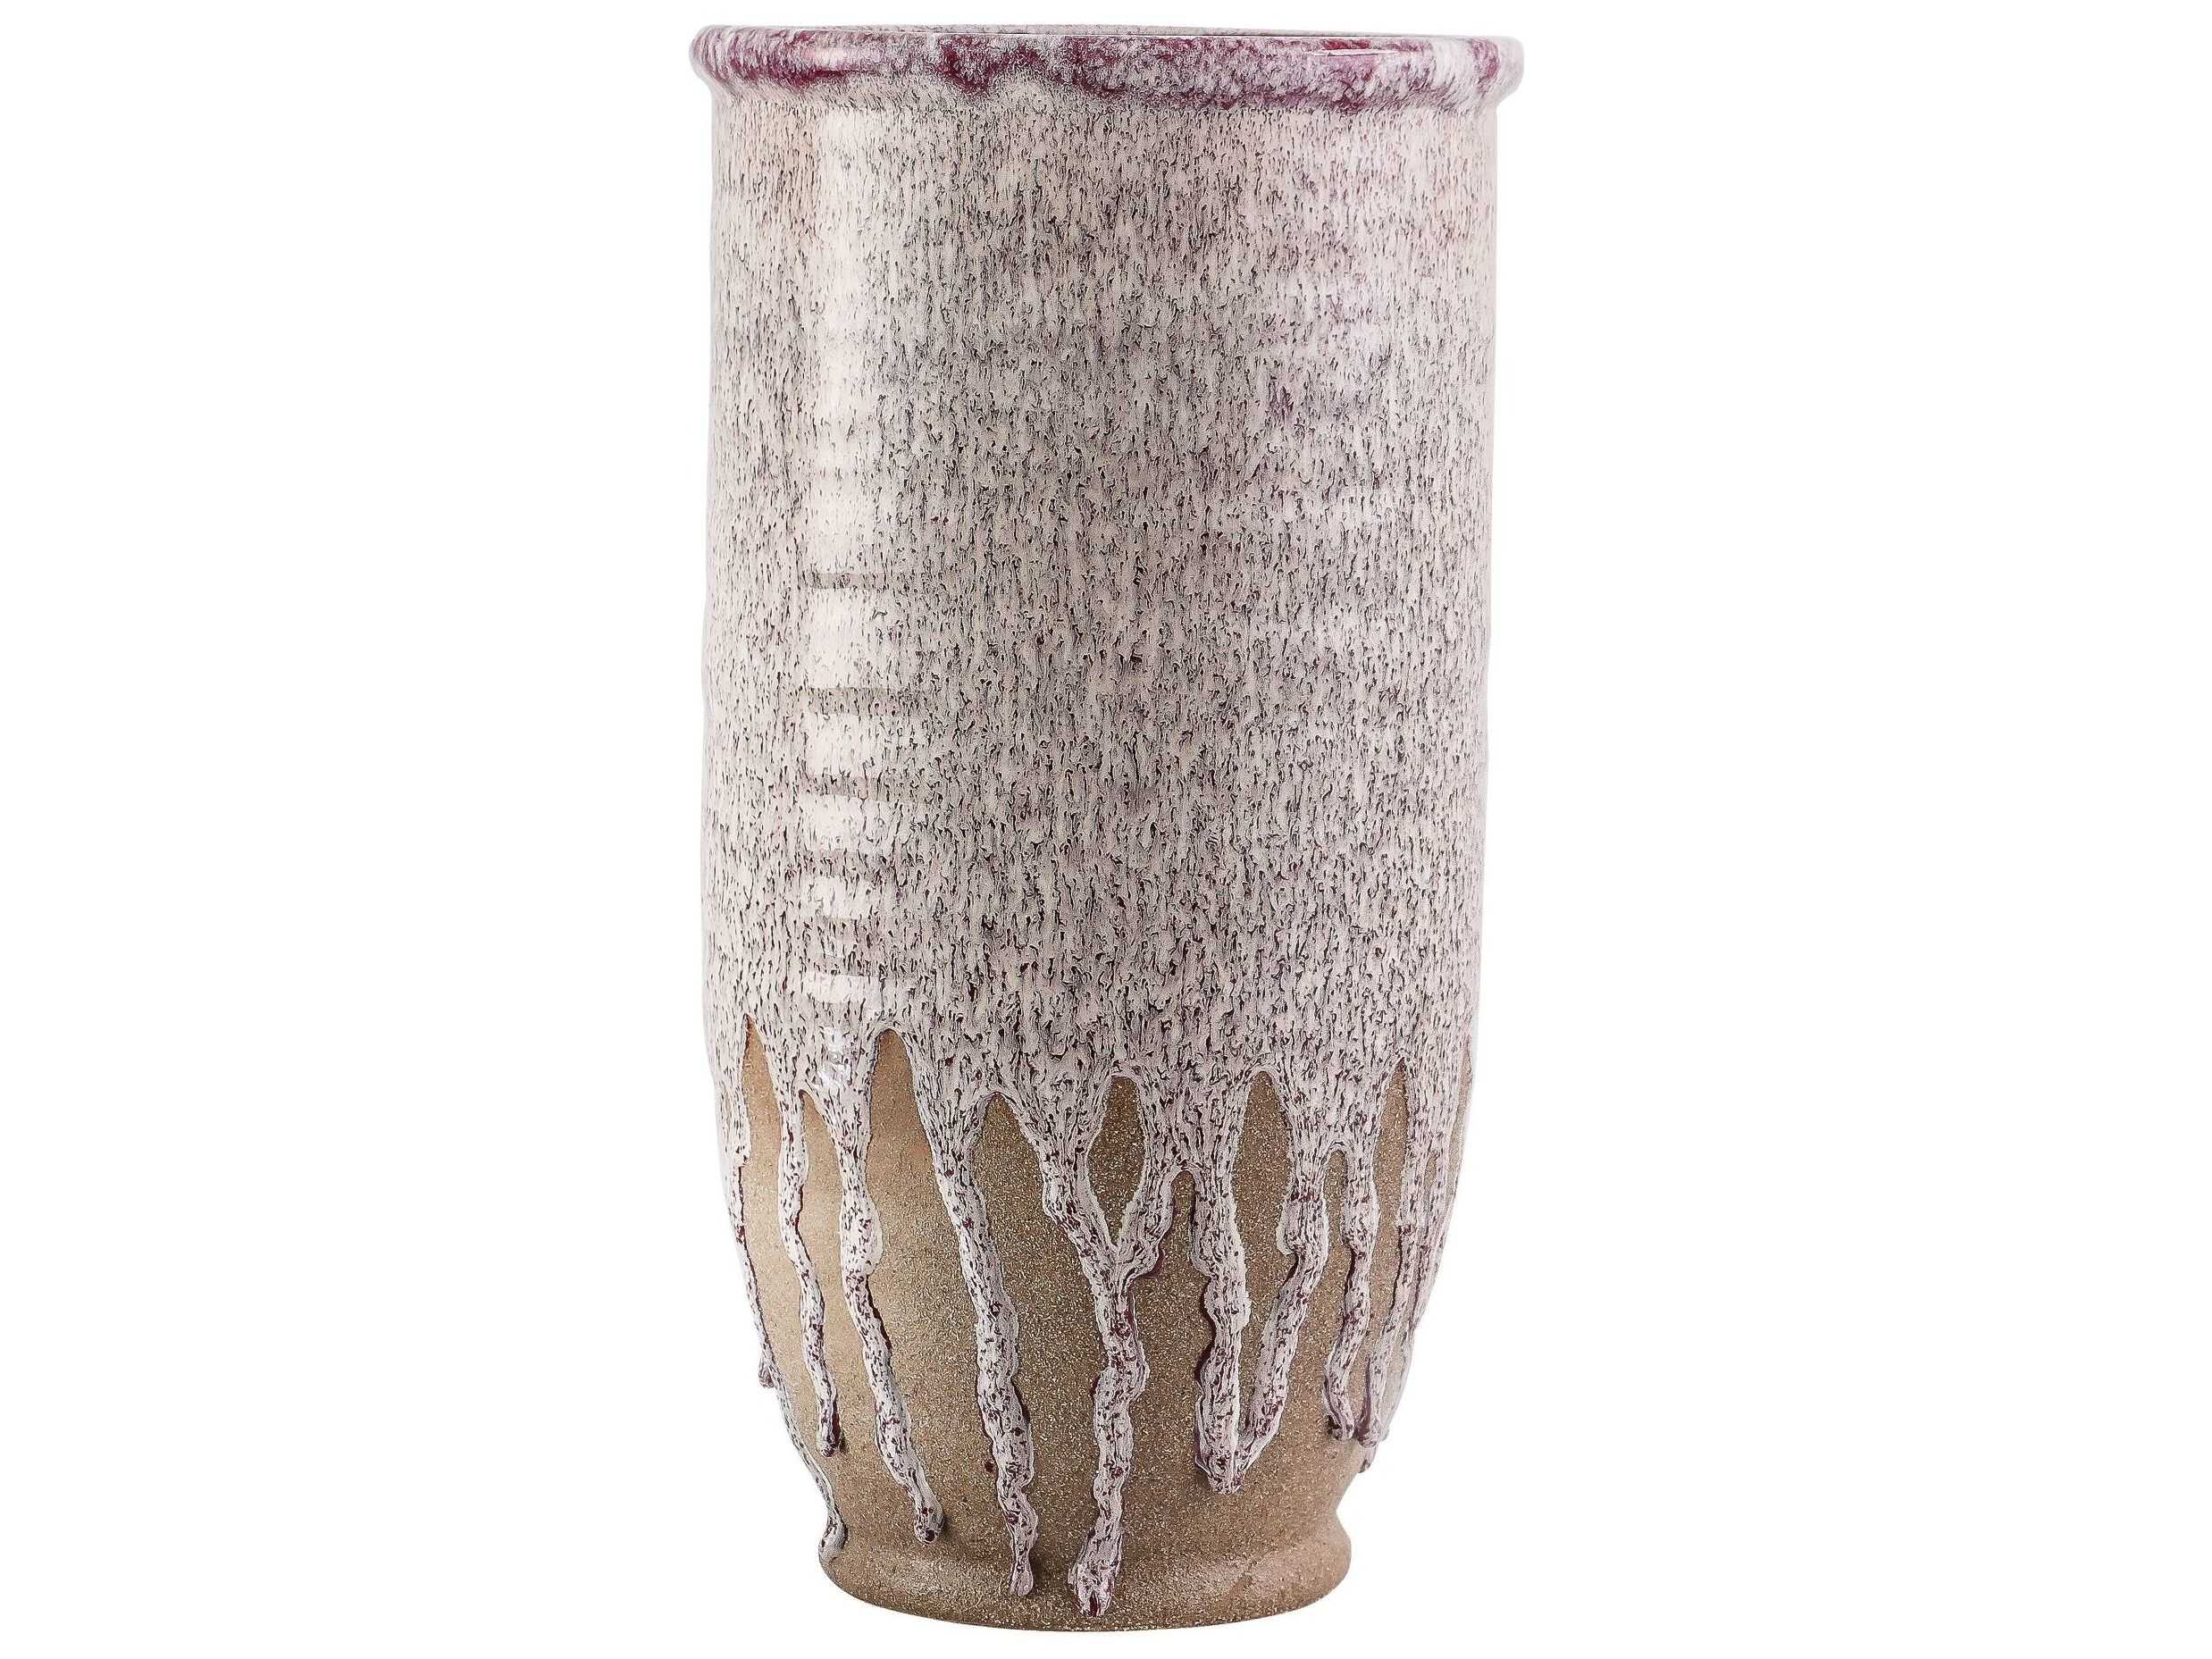 Floor Caldera Vase - Large